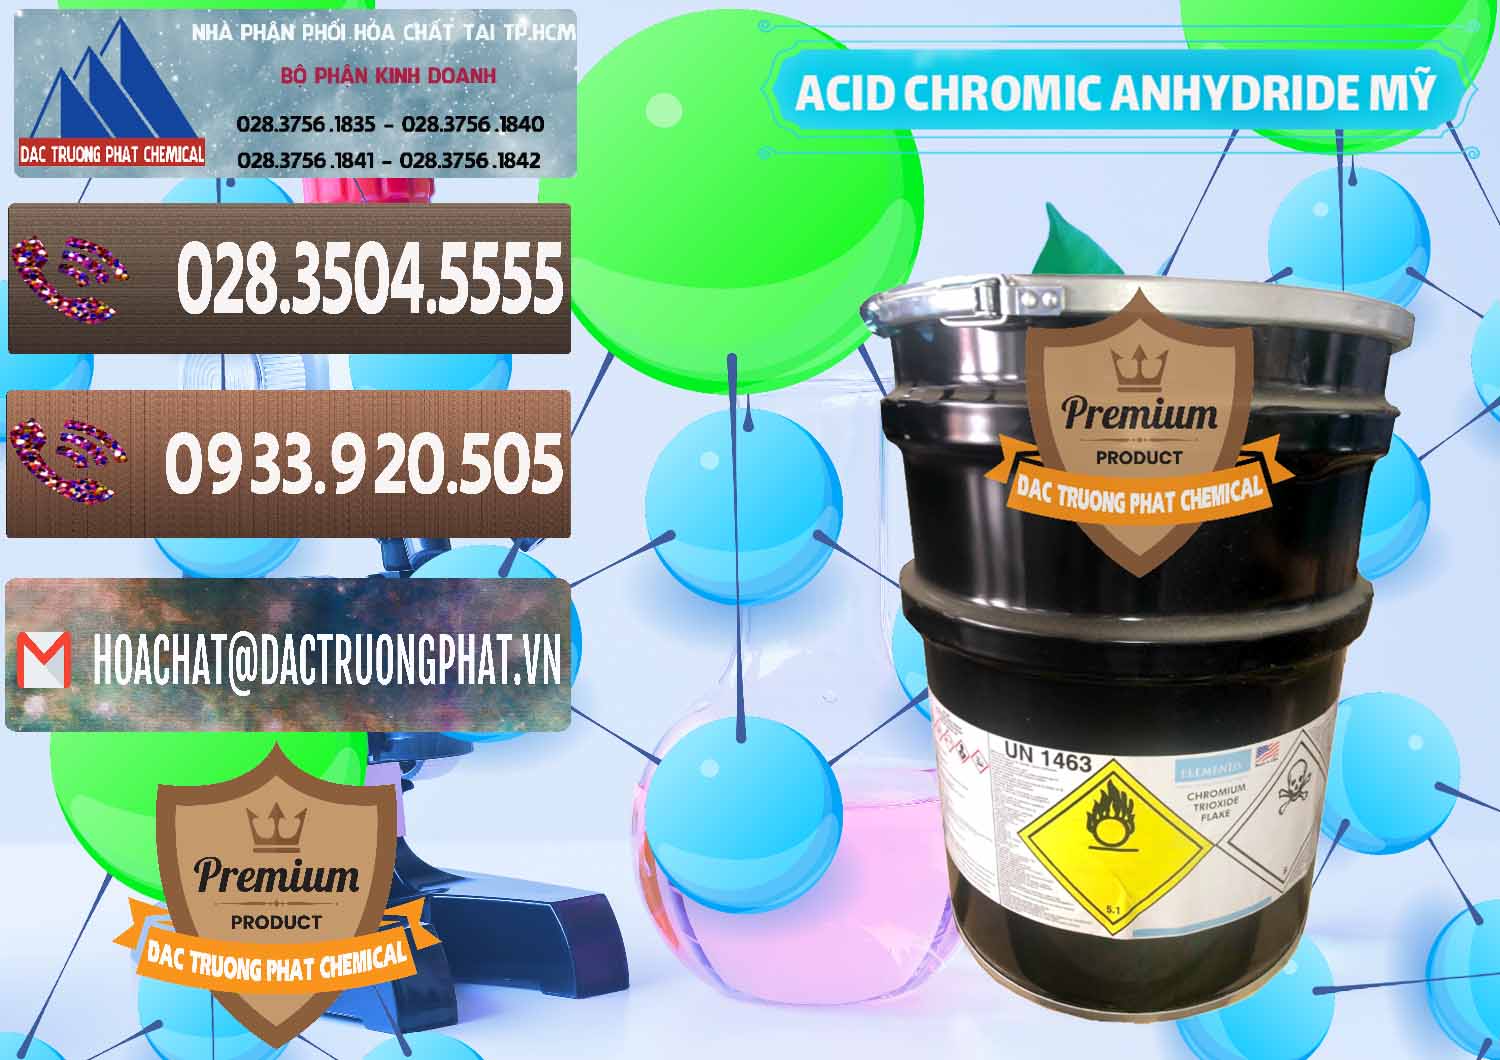 Chuyên cung ứng - bán Acid Chromic Anhydride - Cromic CRO3 USA Mỹ - 0364 - Cty bán _ phân phối hóa chất tại TP.HCM - hoachatviet.net